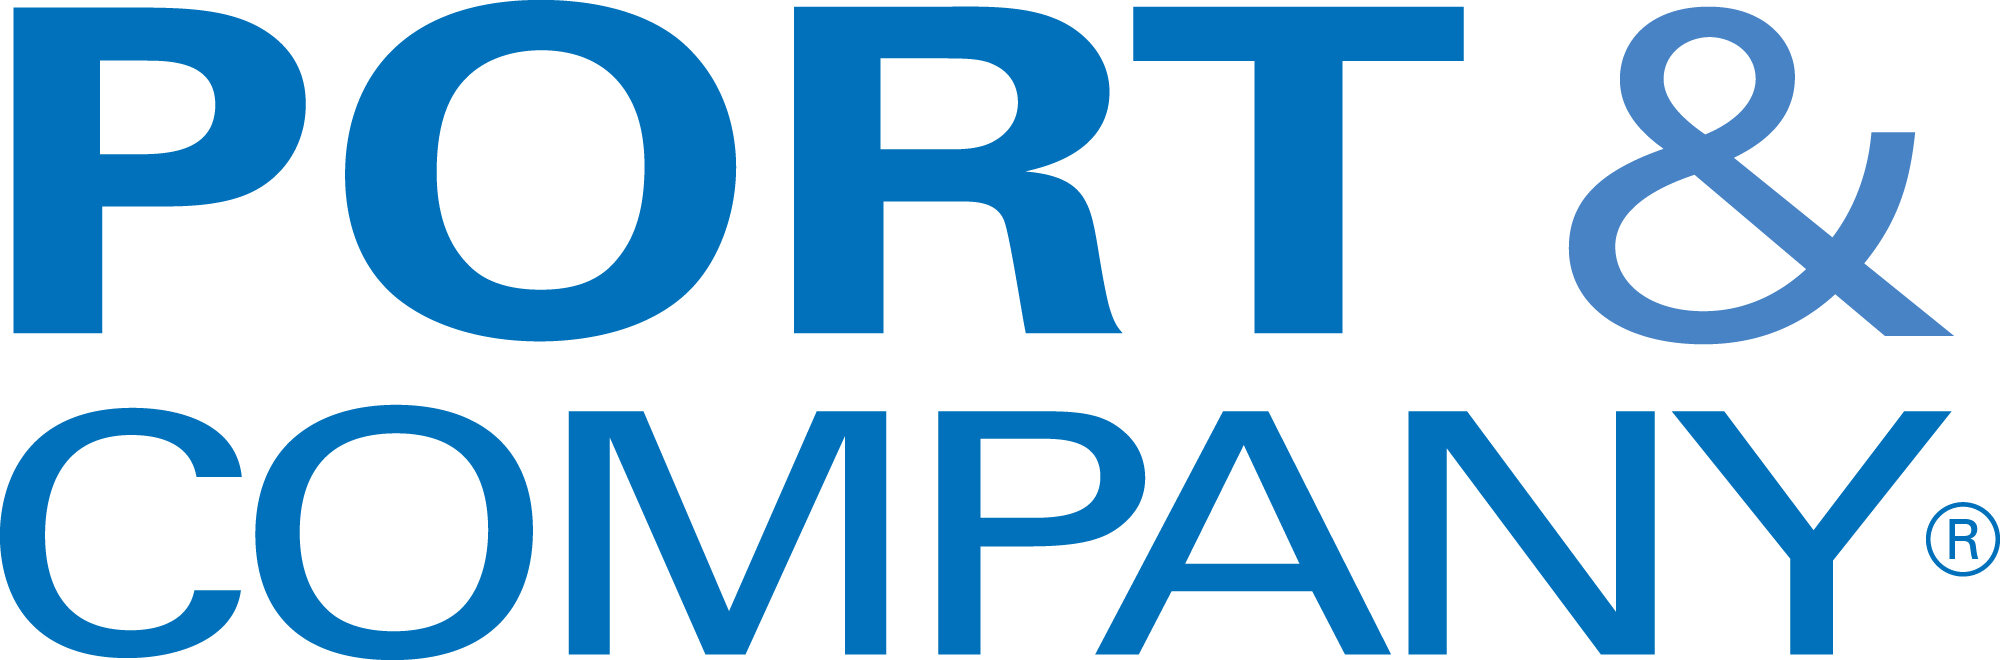 Port&Co_logo (1).jpg